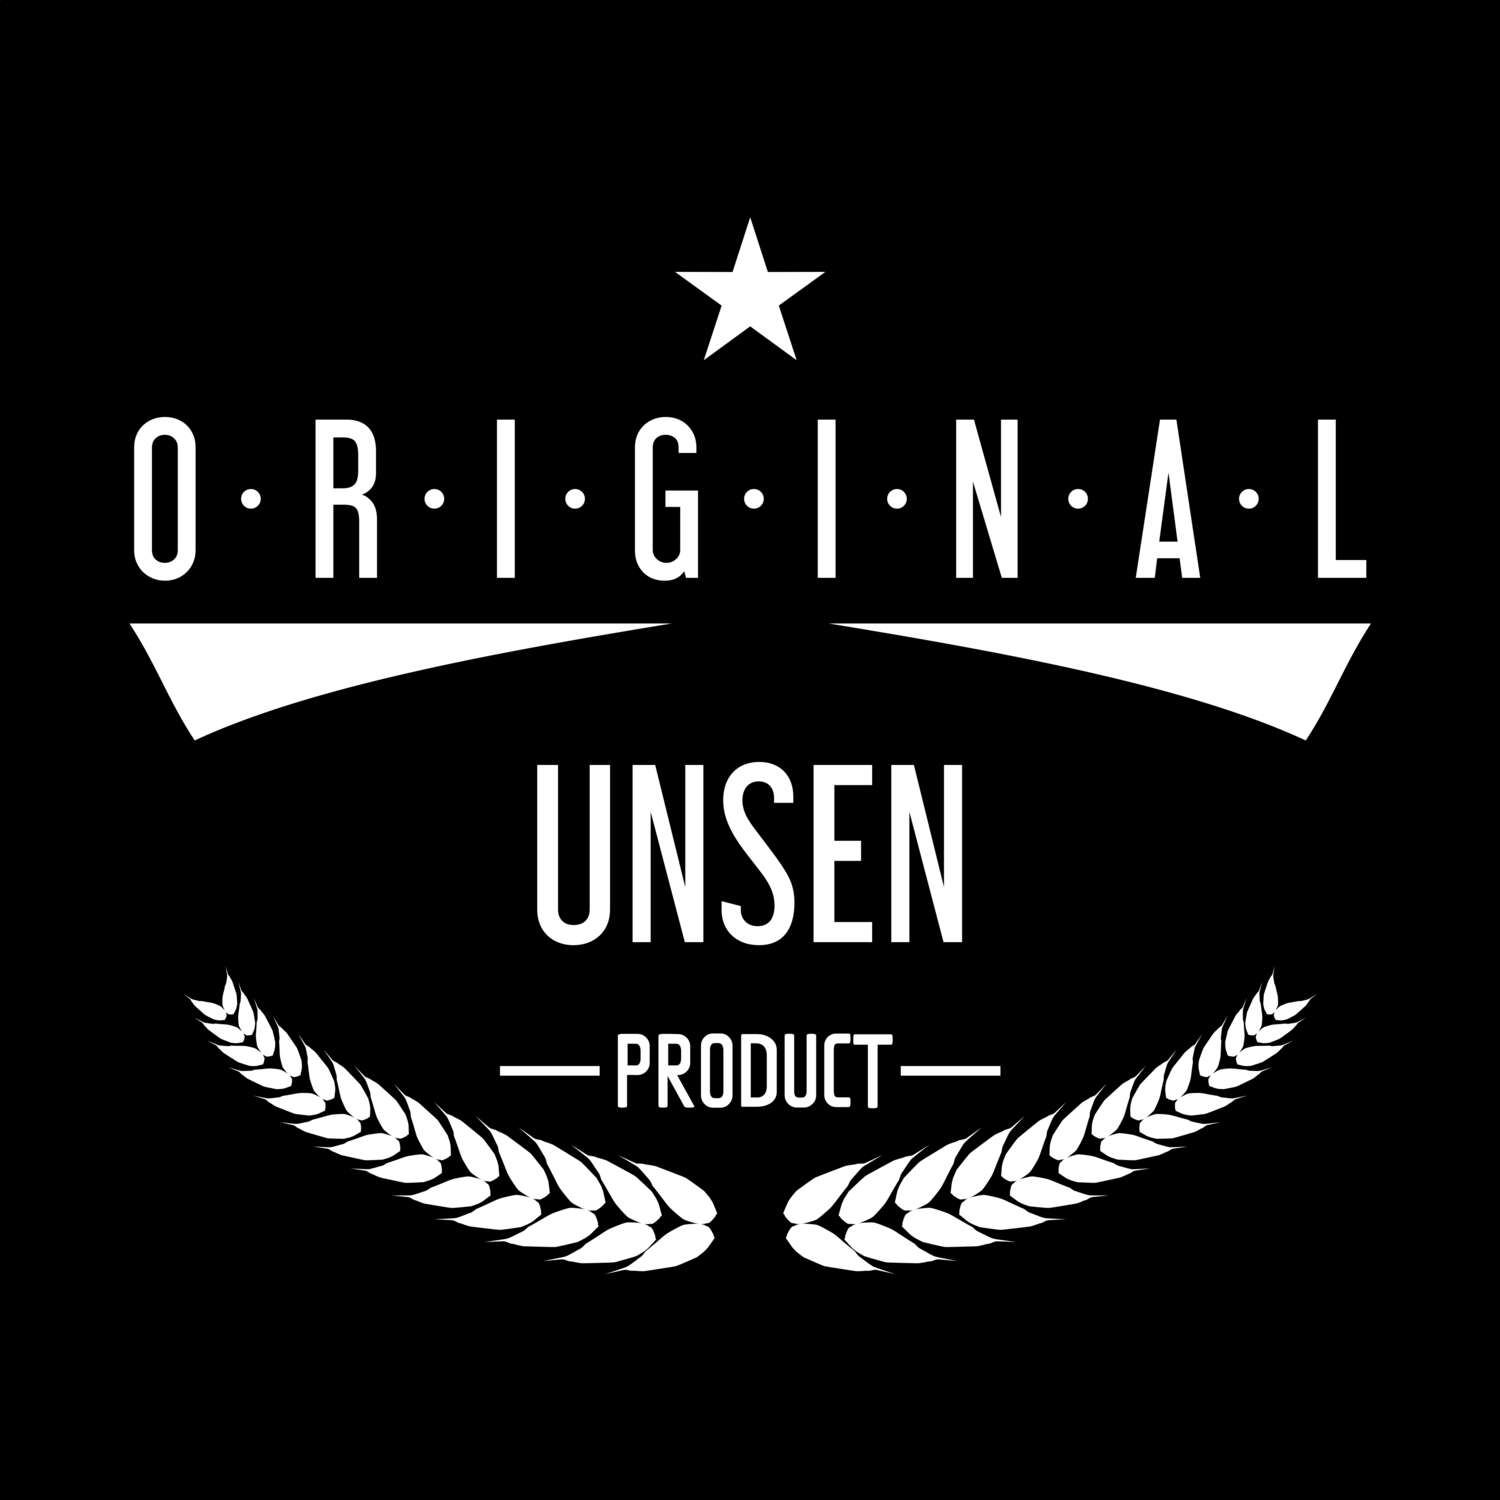 Unsen T-Shirt »Original Product«